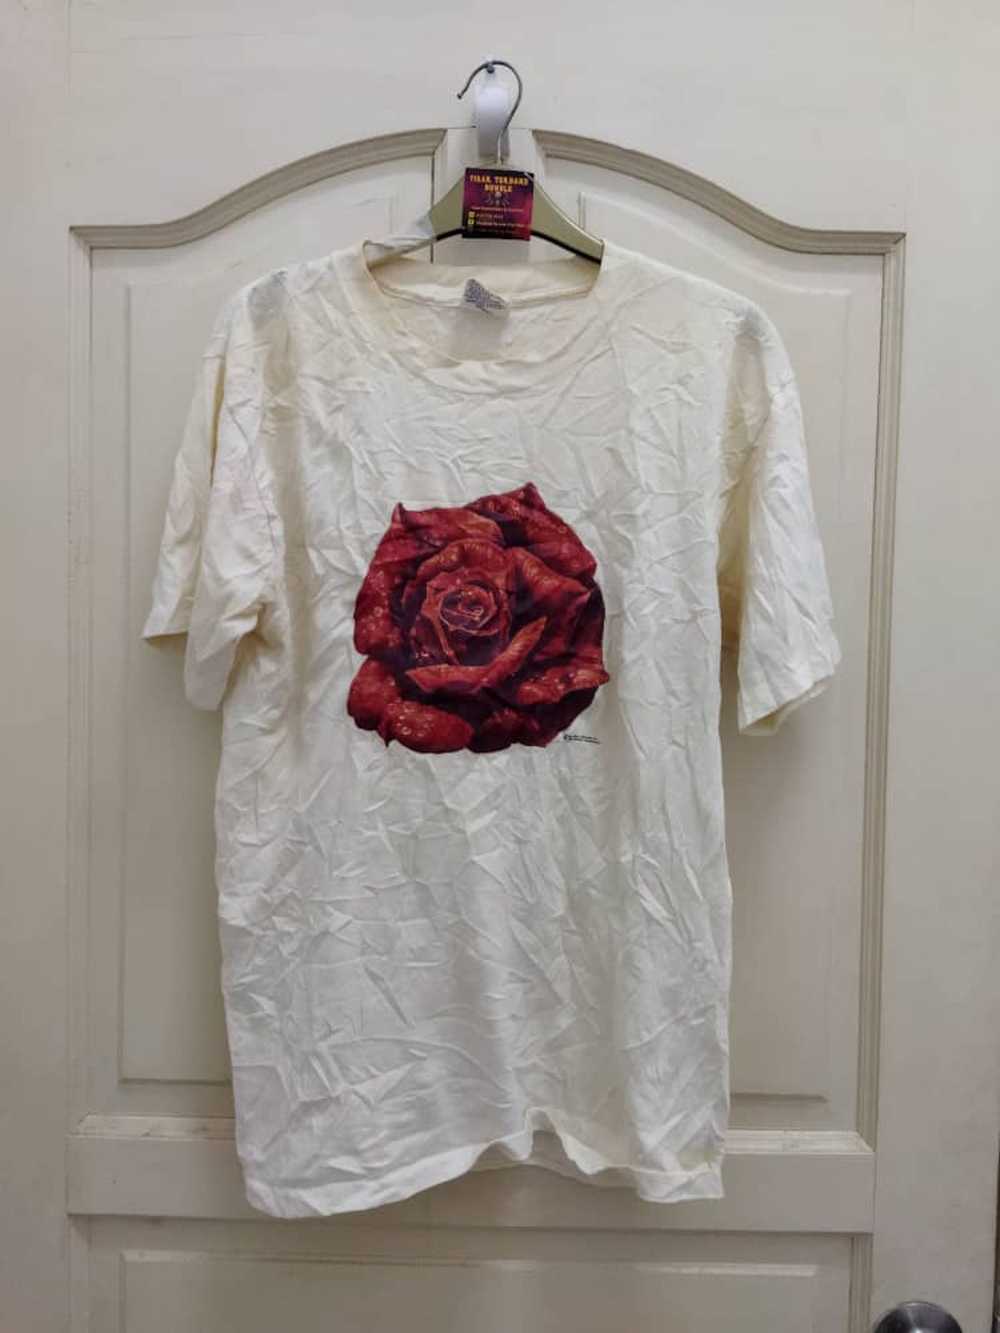 Art × Other × Vintage Rare Vtg Red Rose Art Tshirt - image 1